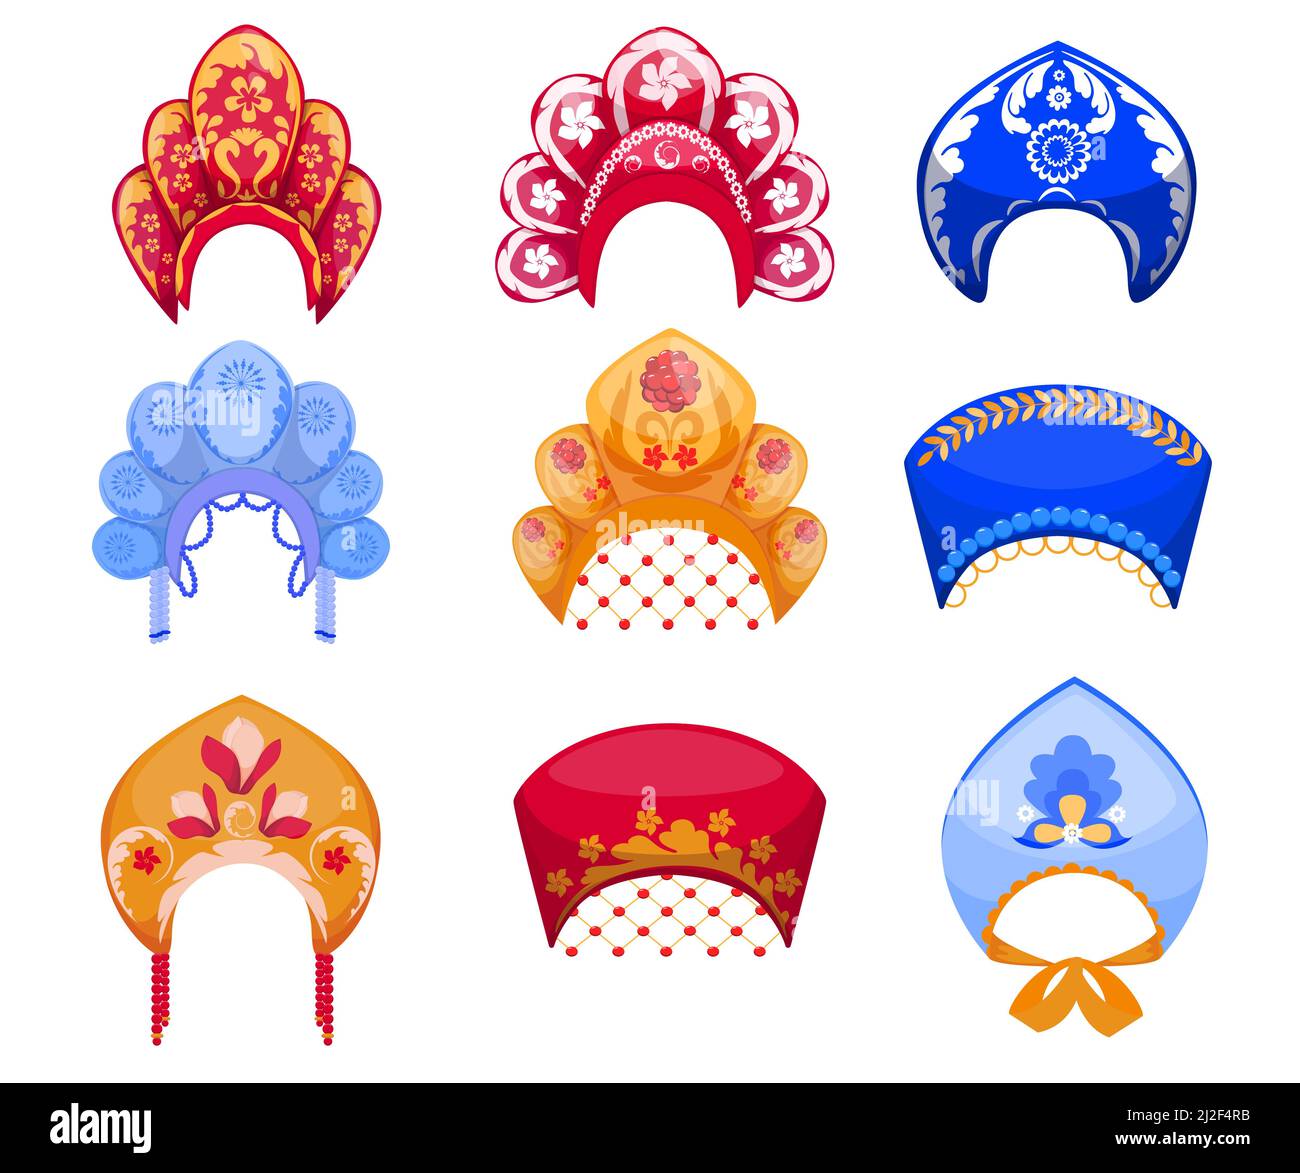 Ensemble de dessins animés de kokoshniks, la traditionnelle femme russe headaddress. Illustration vectorielle plate. Différents kokoshniks colorés comme vintage folk ornemental Rus Illustration de Vecteur